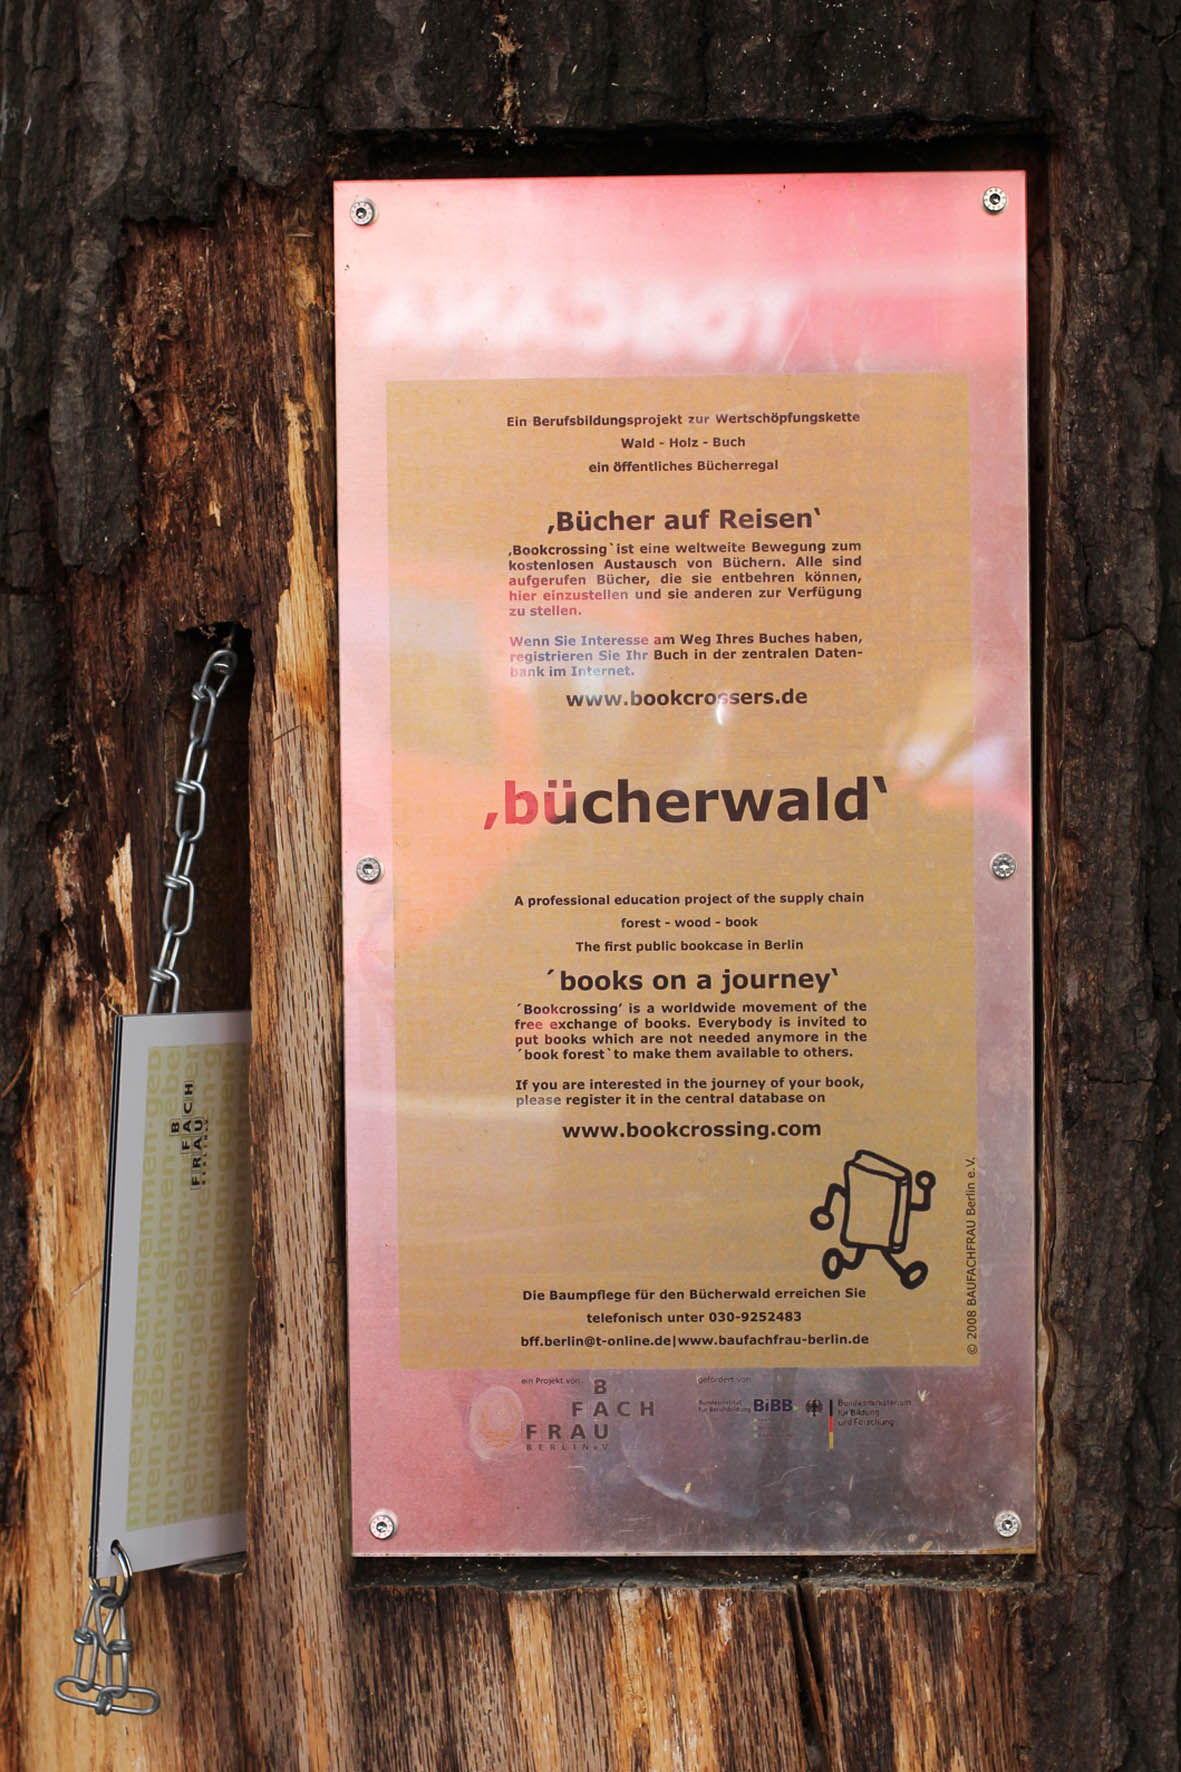 Eine Tafel an dem Bücherwald - Eine Bibliothek mit Regalen, die in Stämme geschnitzt sind, die zusammen verschraubt wurden, um einem Baum zu ähneln - auf der Sredzkistrasse in Berlin Prenzlauer Berg Ein Berufsbildungsprojekt zur Wertschöpfungskette Wald - Holz - Buch ein öffentliches Bücherregal